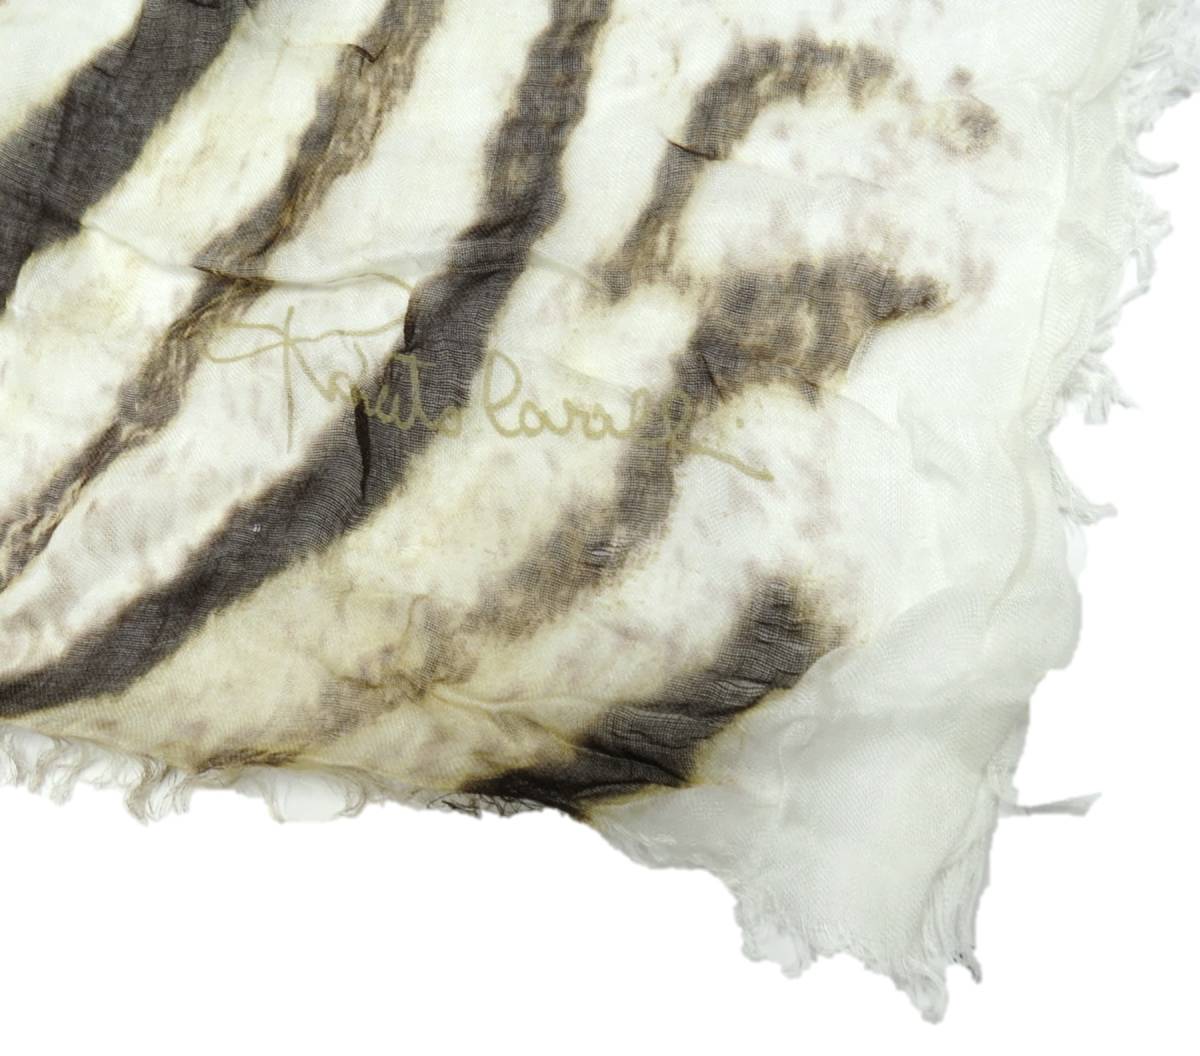 274 новый товар [Roberto Cavalliro ремень kavali] Италия производства животное рисунок белый & Brown палантин шарф весна предмет смешанные товары Europe 